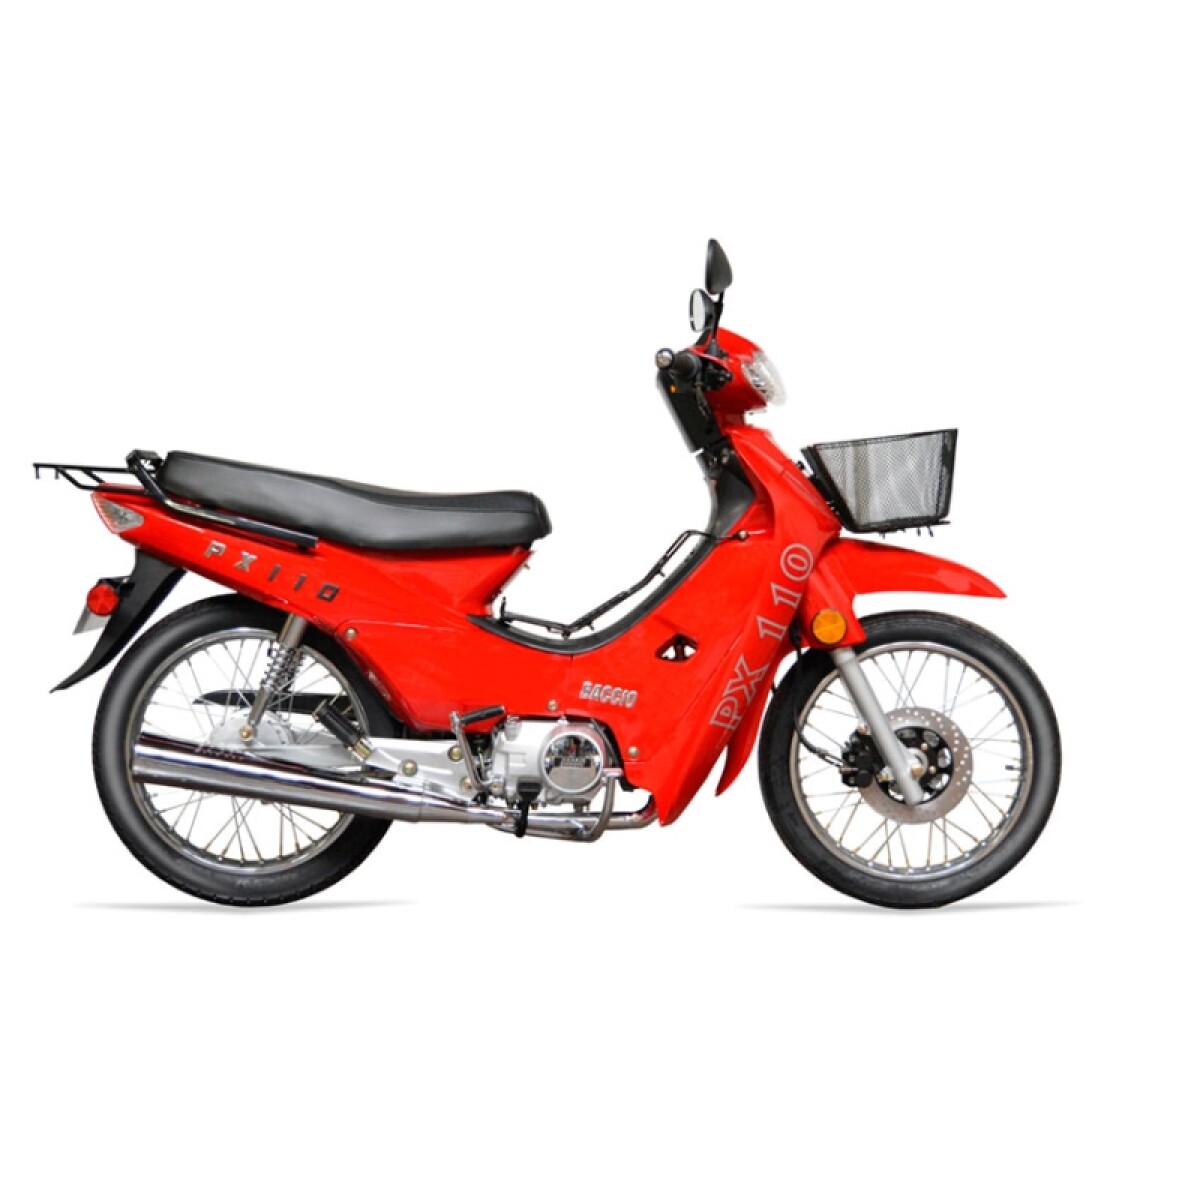 Moto Baccio Cub Px110 Rueda Rayos - Rojo 